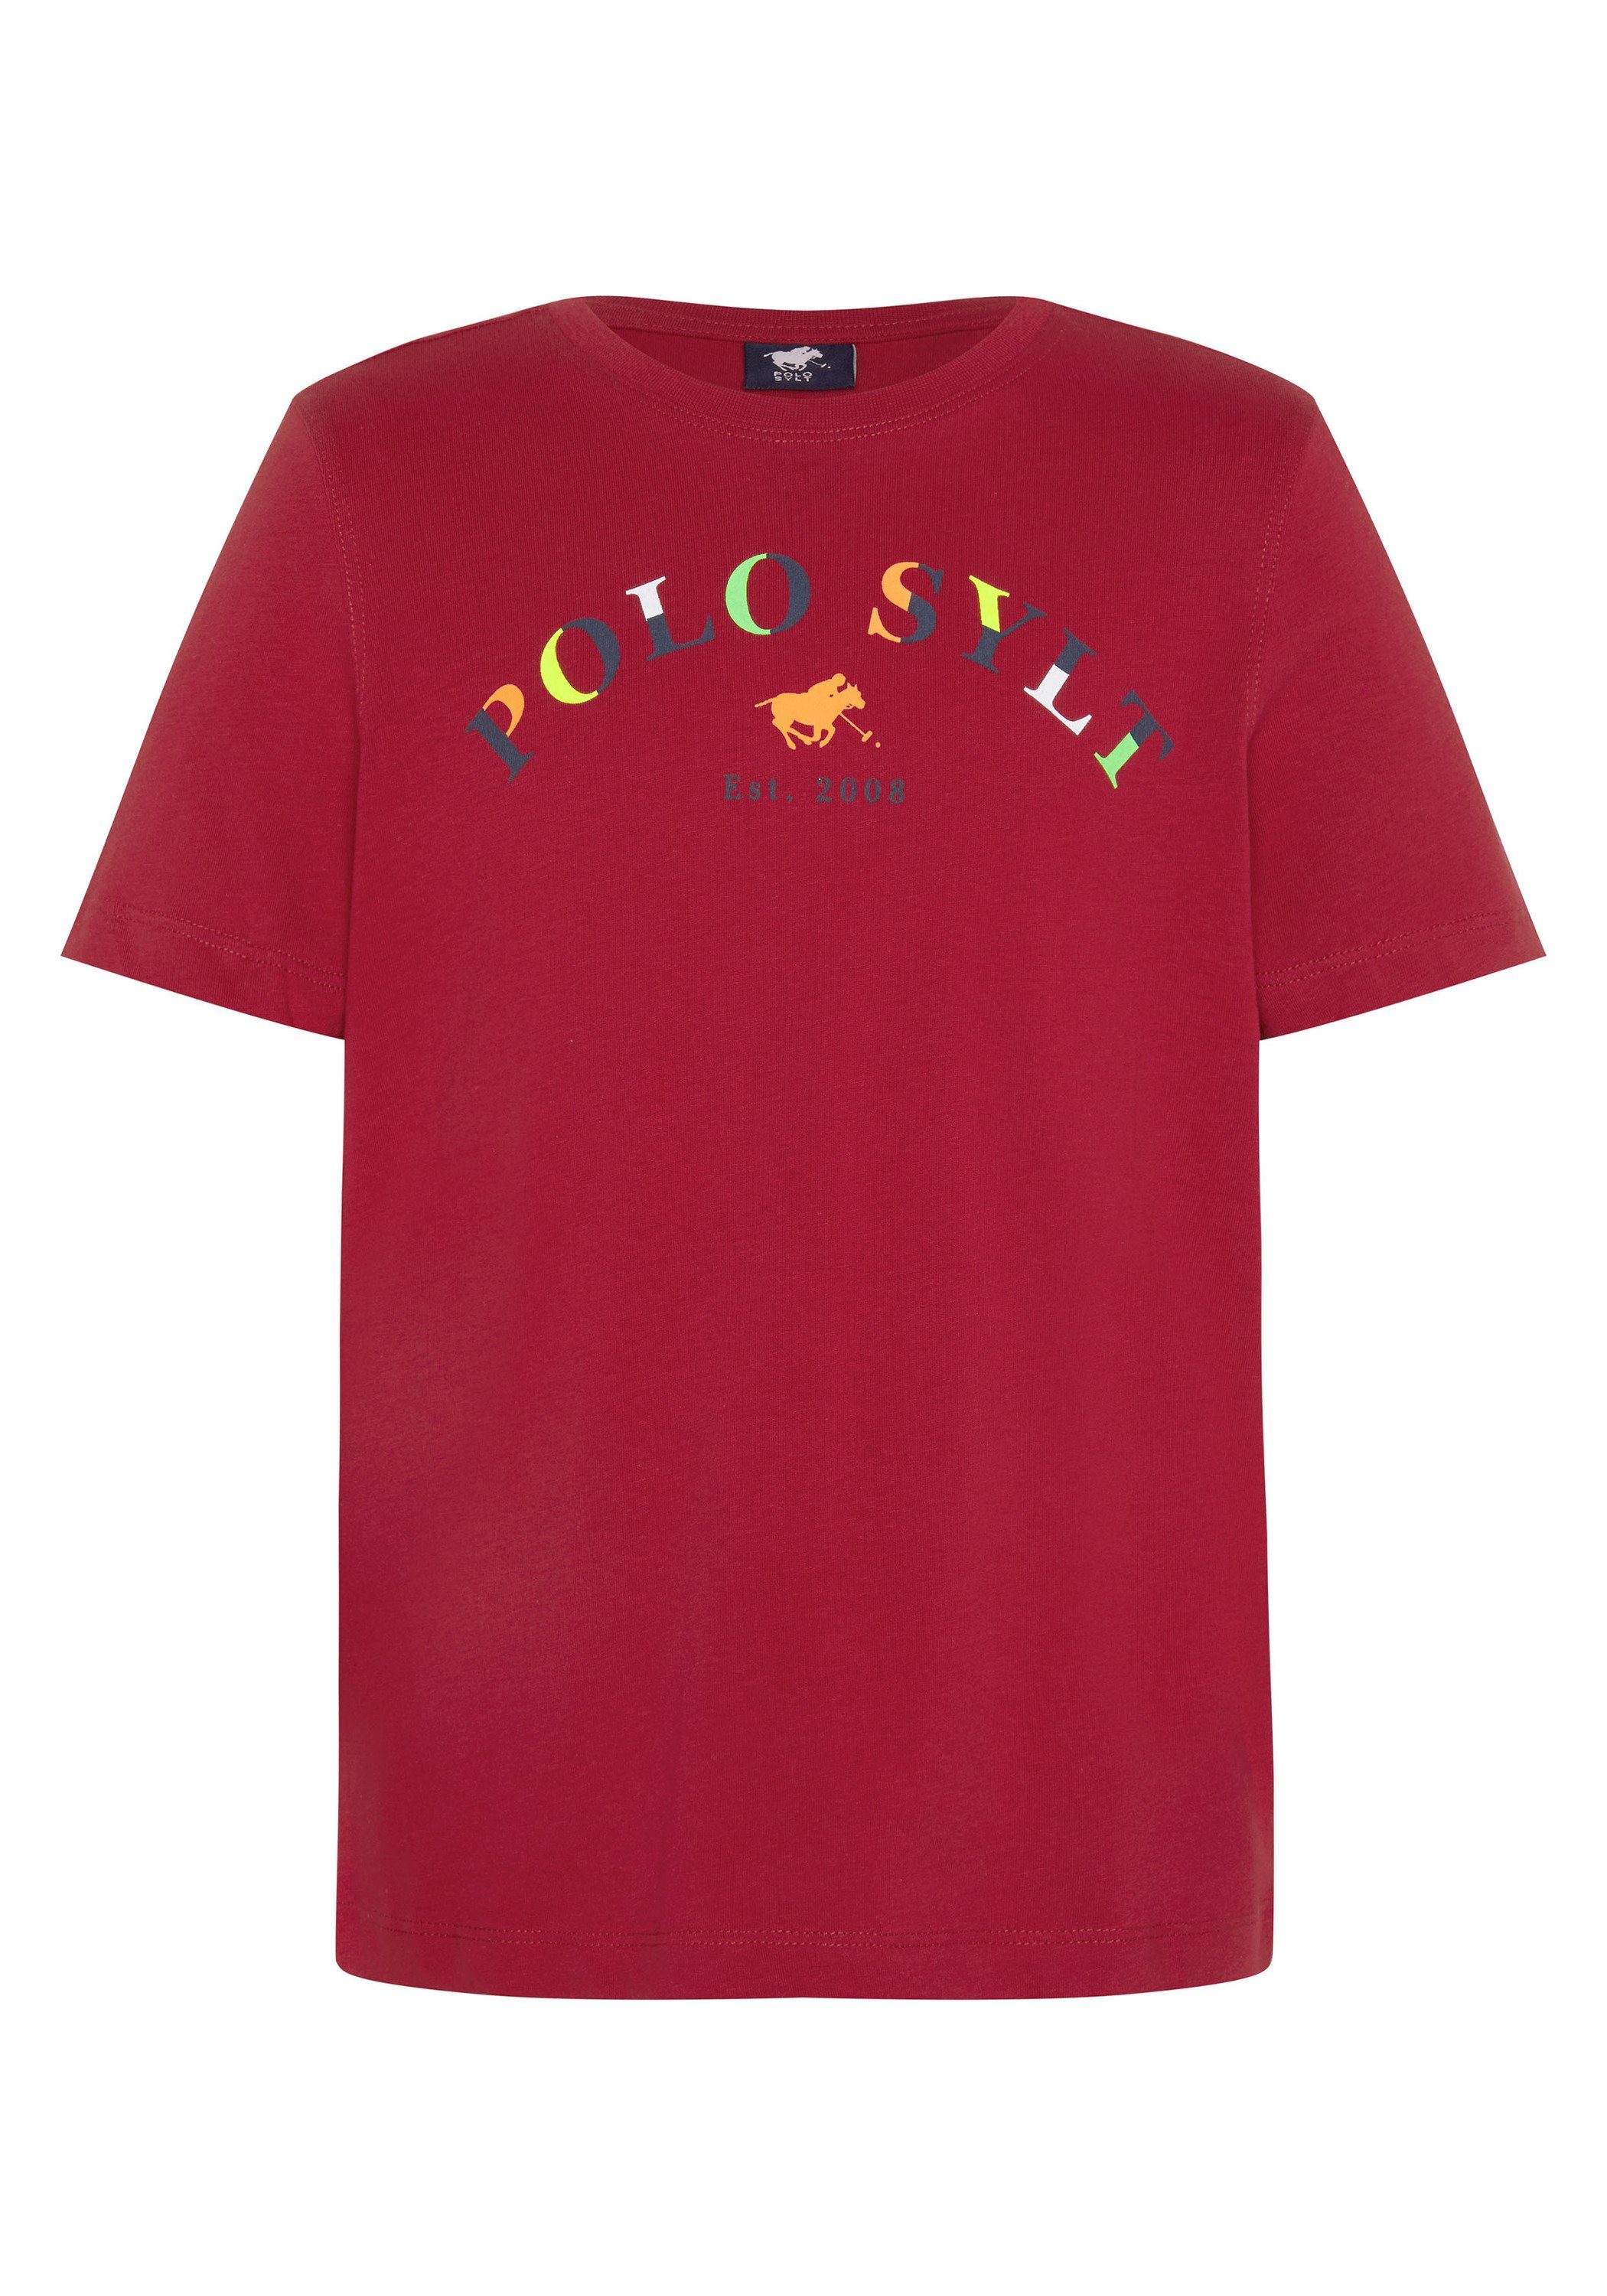 Polo Sylt farbenfrohem Print-Shirt 19-1557 Pepper Logoprint mit Chili